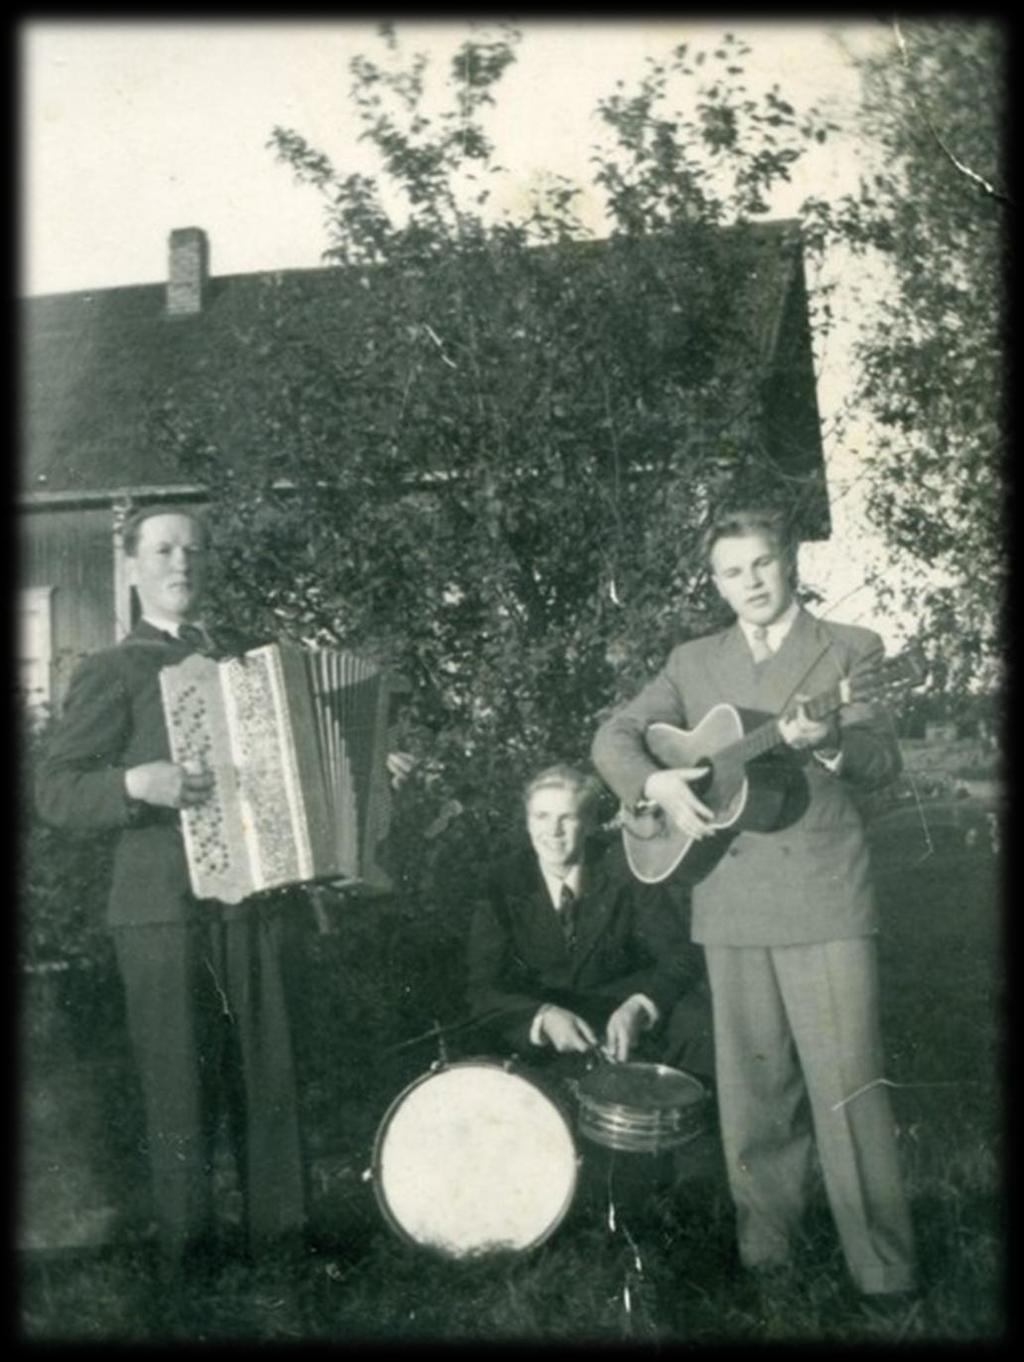 Aluksi tässä omassa orkesterissani soitti hanuria Kalevi Seppä. Bassoa ja hanuria soitti Lauri Annala ja minä soitin kitaraa ja lauloin.